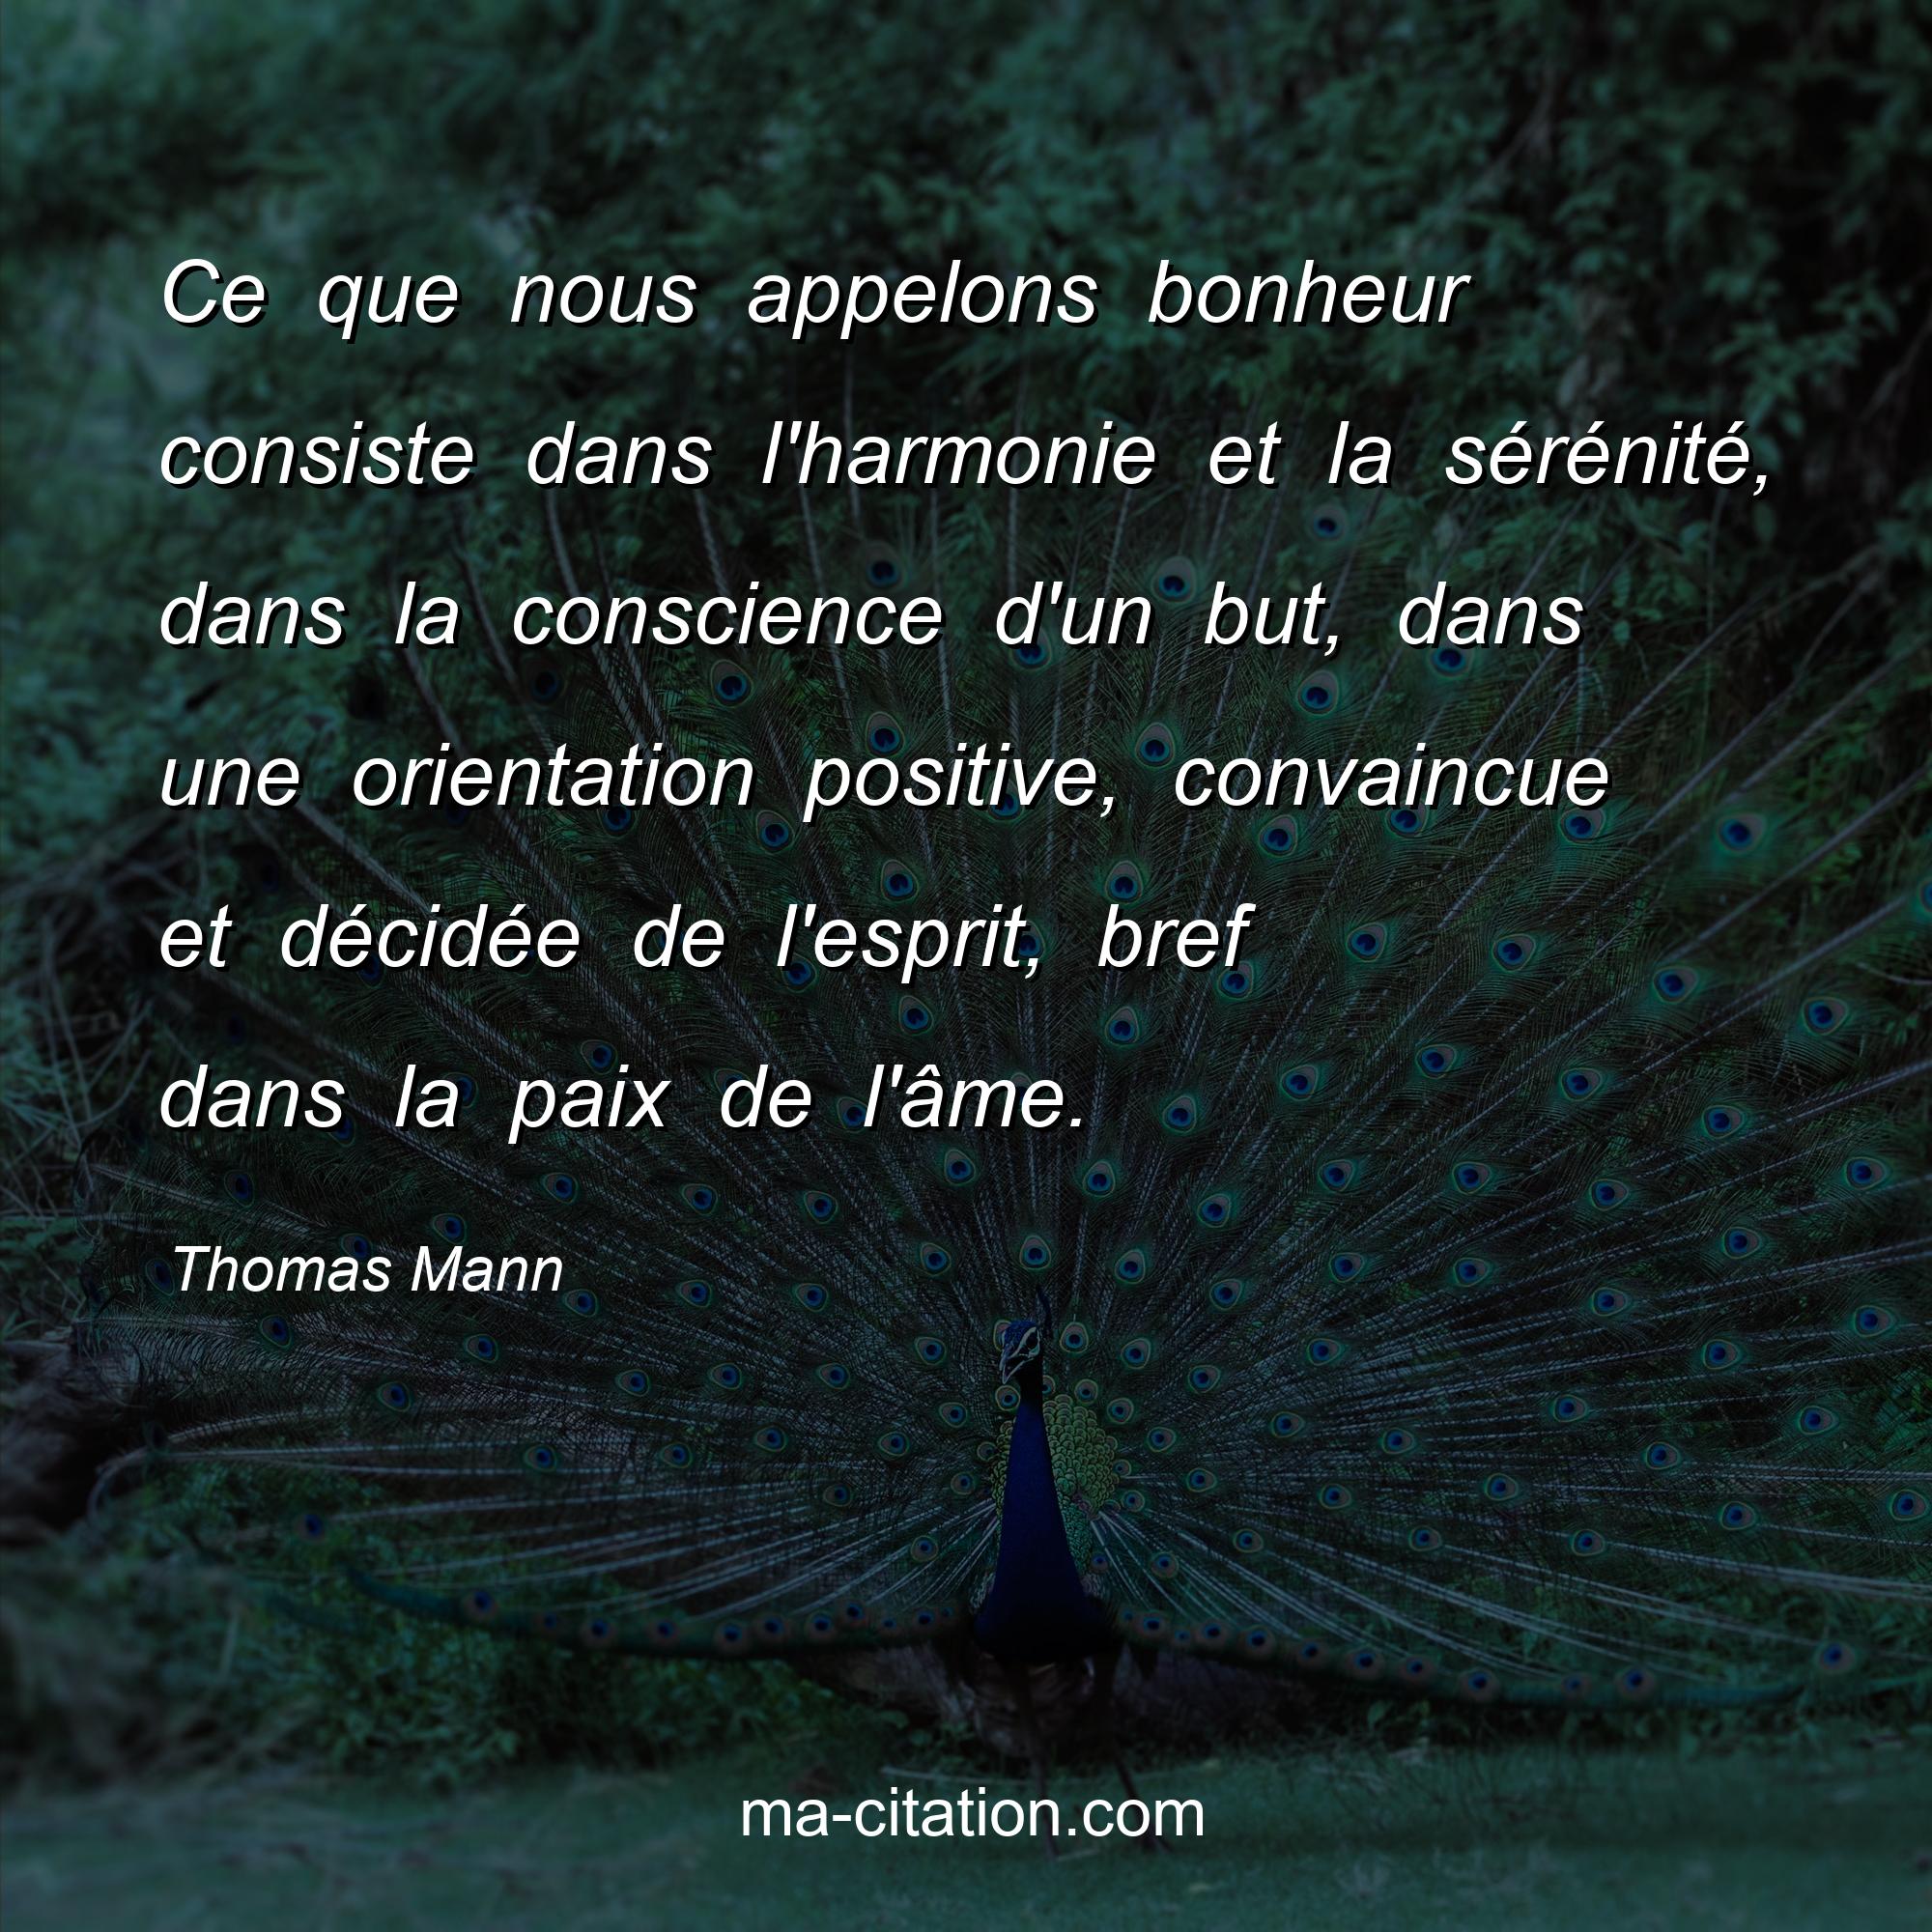 Thomas Mann : Ce que nous appelons bonheur consiste dans l'harmonie et la sérénité, dans la conscience d'un but, dans une orientation positive, convaincue et décidée de l'esprit, bref dans la paix de l'âme.